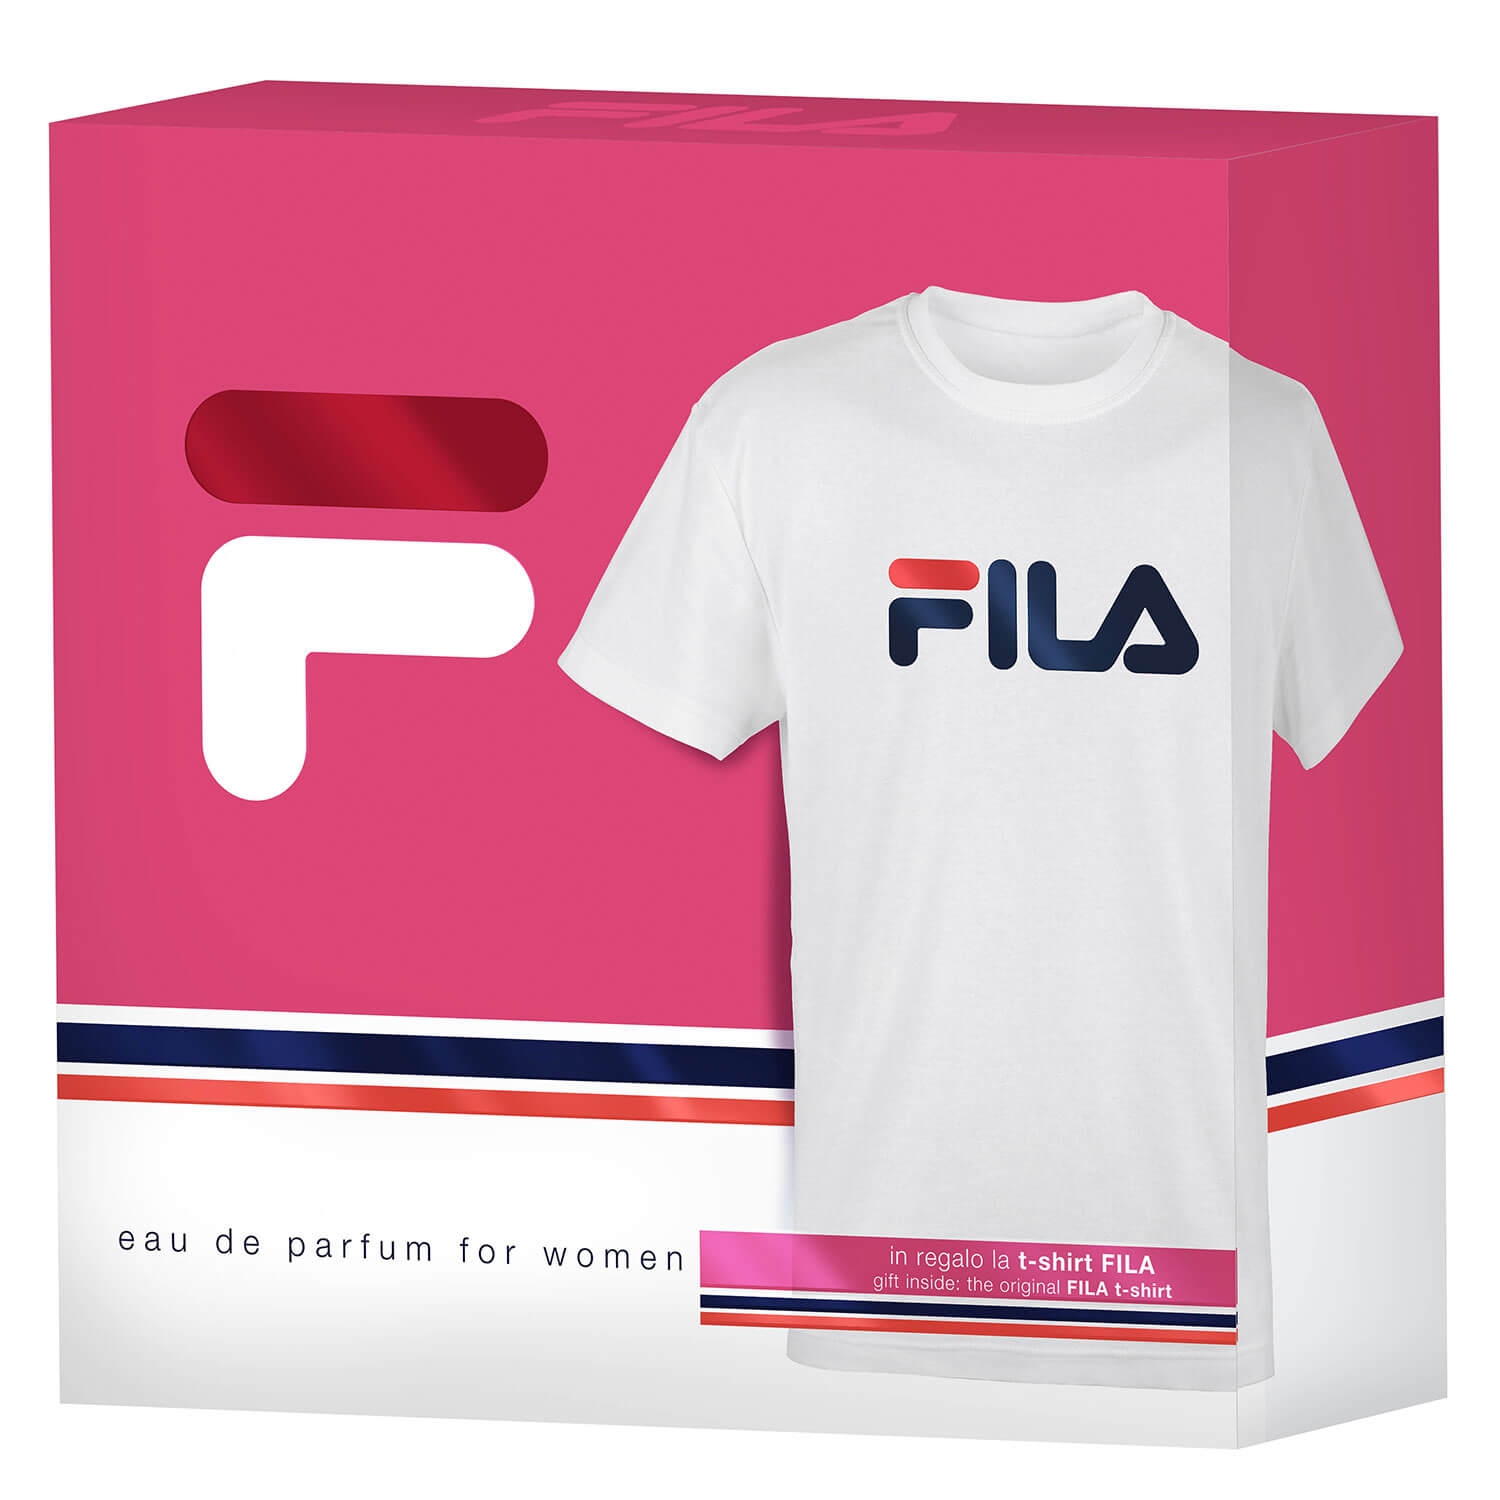 Produktbild von FILA - For Women Eau de Parfum Set